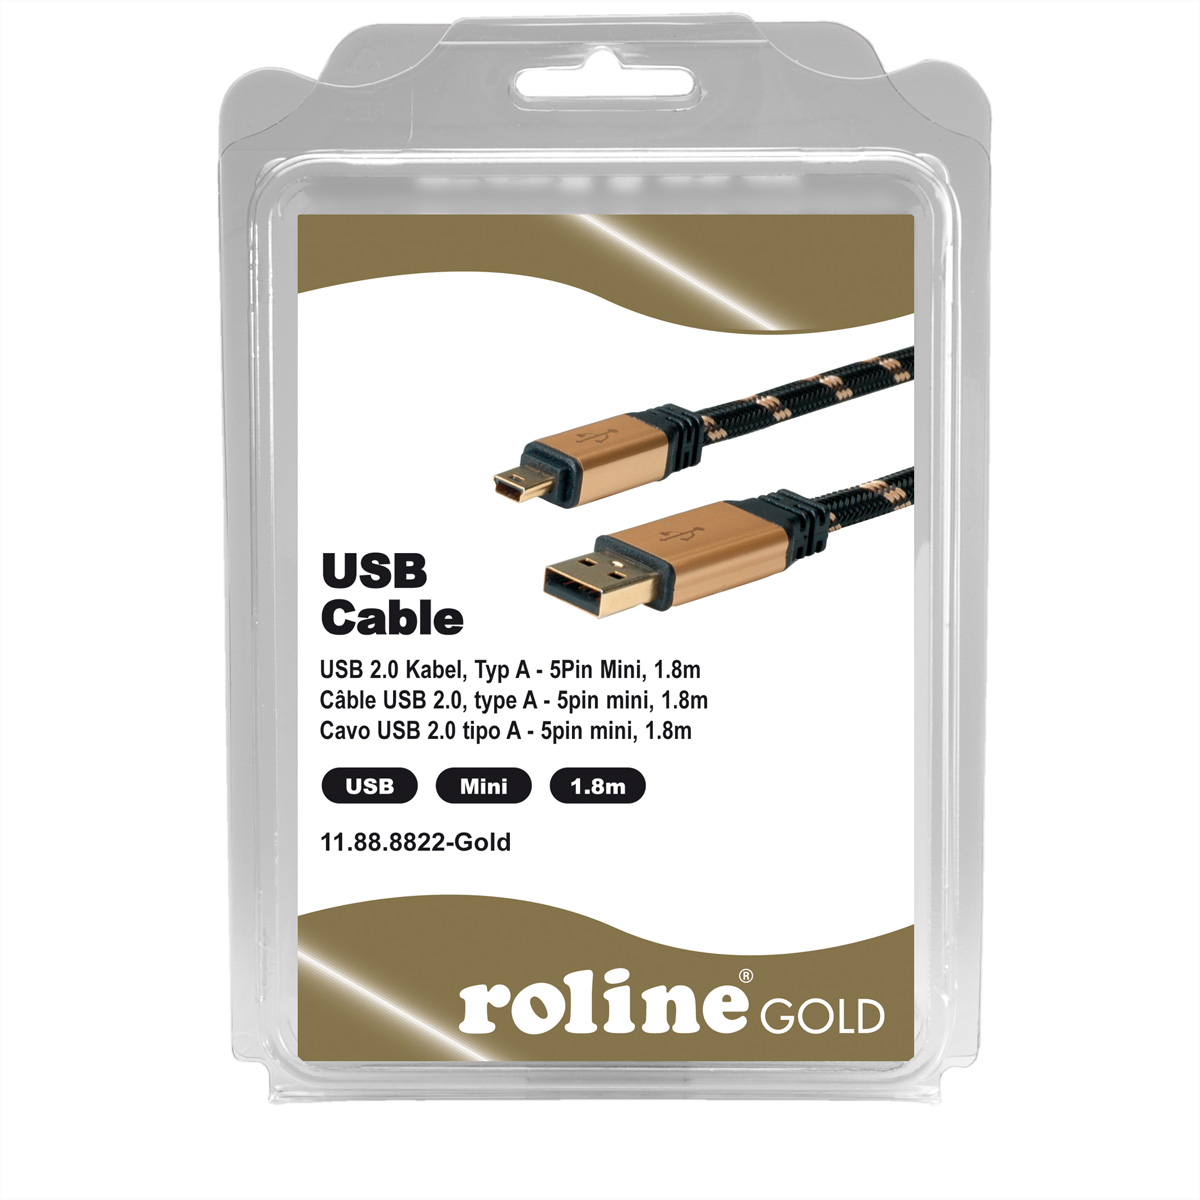 ROLINE Kabel, GOLD A 5-Pin USB 2.0 USB Kabel 2.0 Mini Typ Mini -